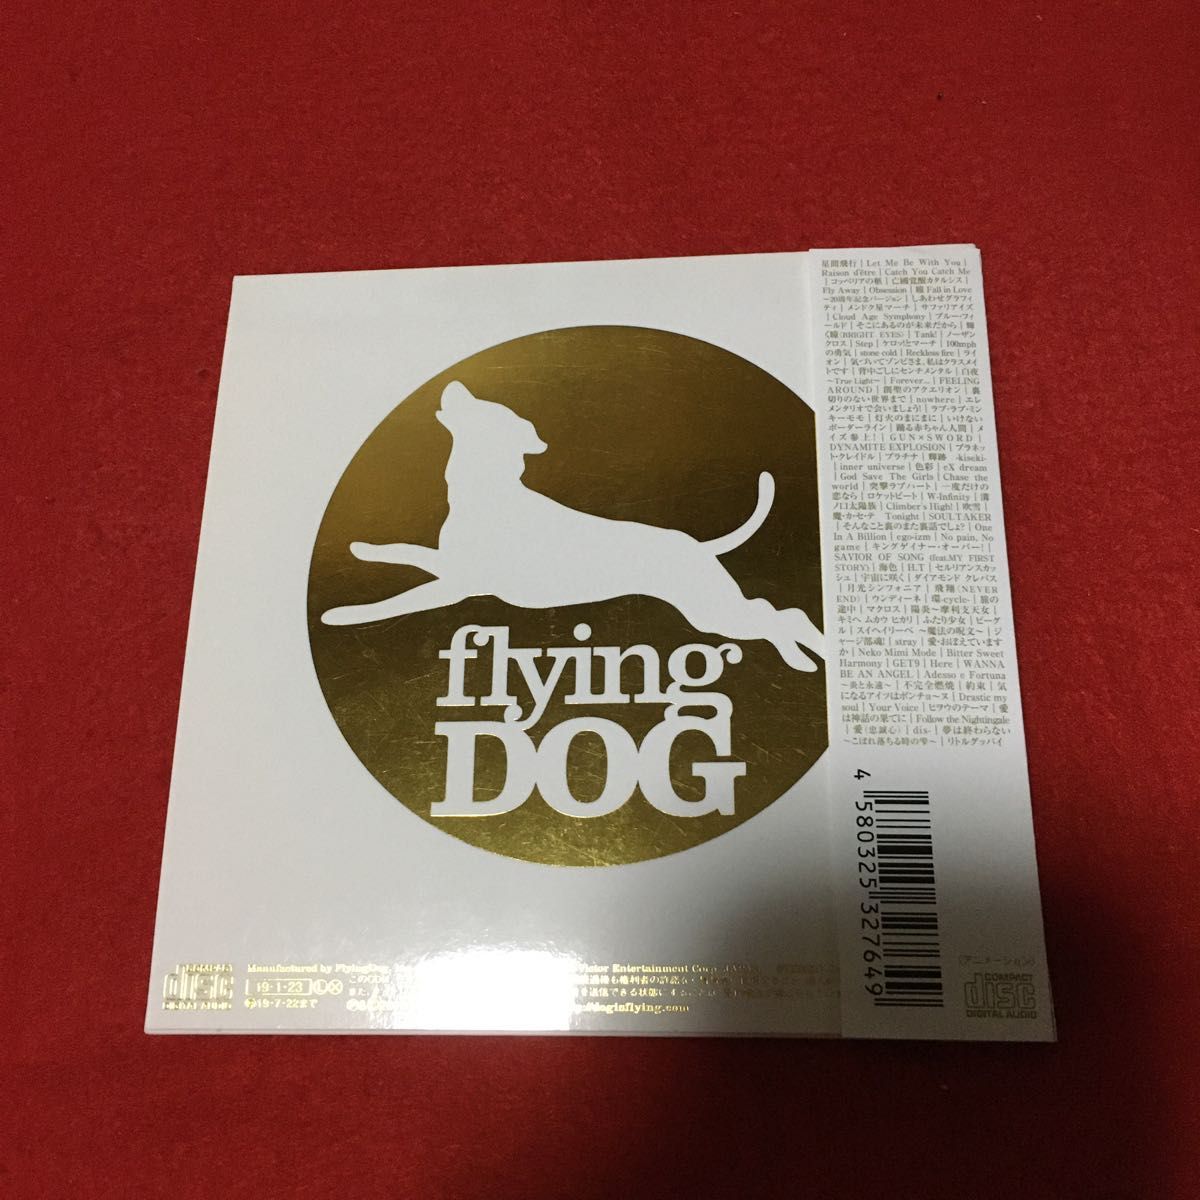 フライングドッグ10周年記念 NON-STOP FlyingDog MEGA …